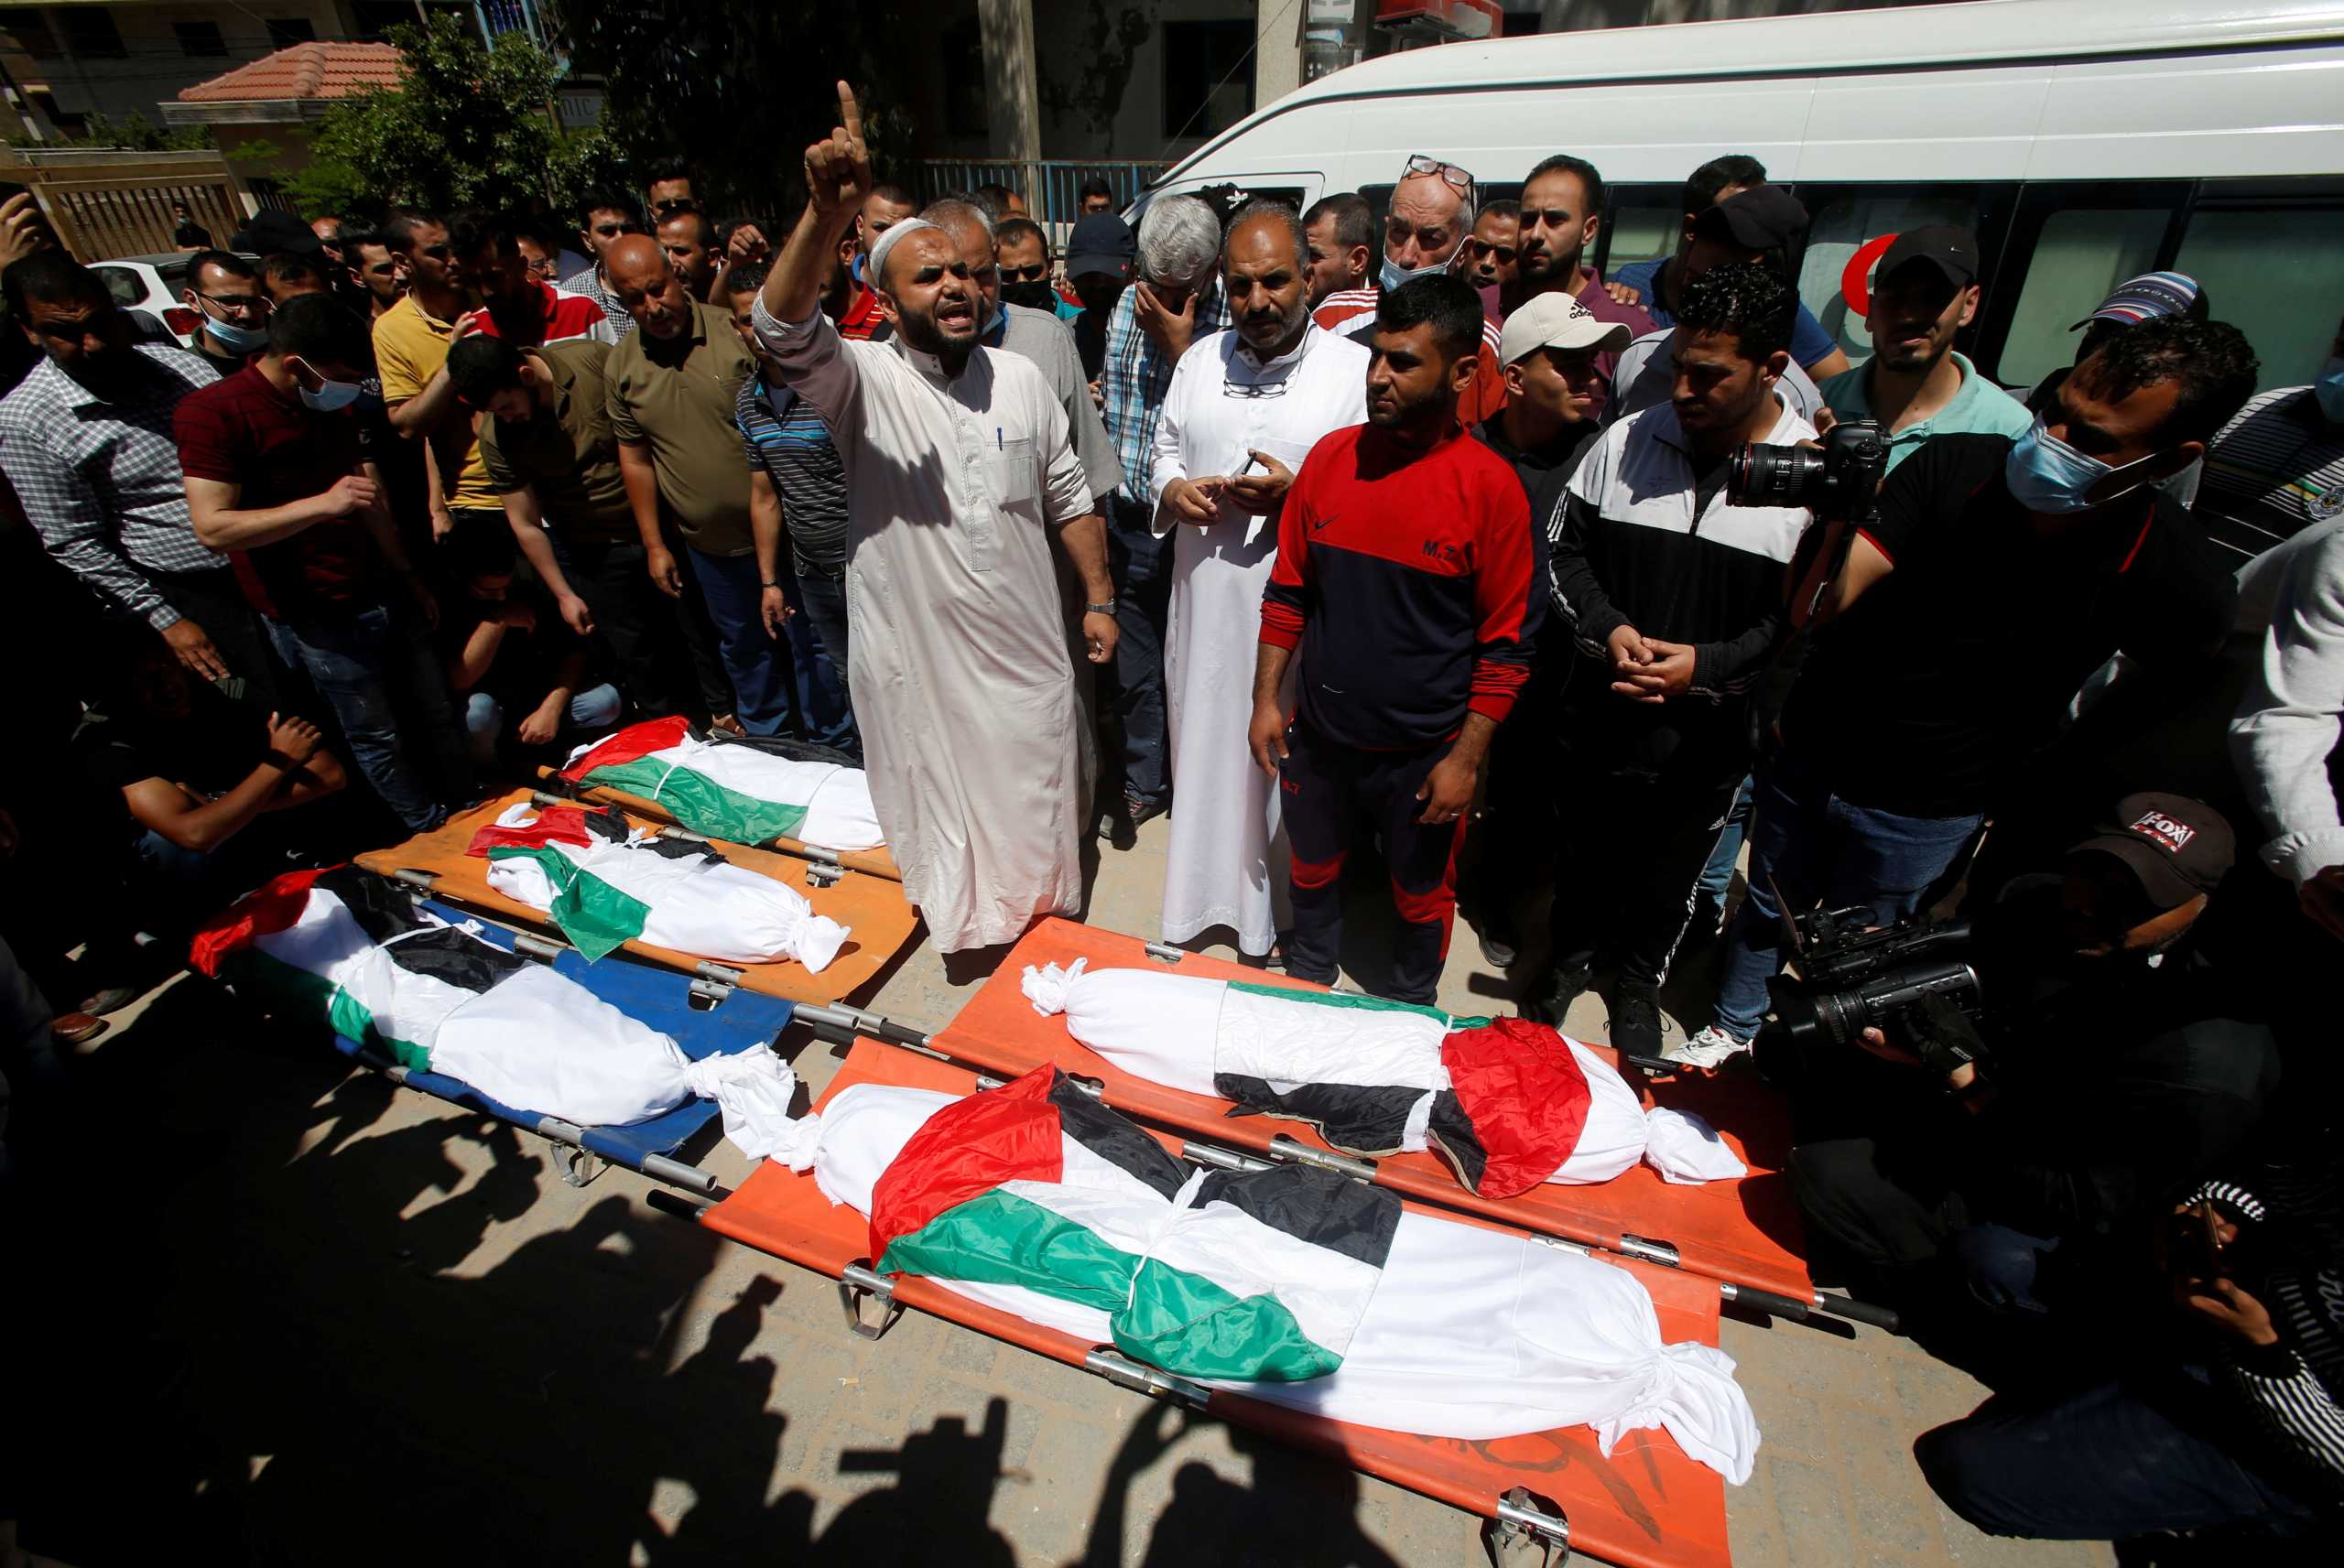 Λωρίδα της Γάζας: Σπαραγμός στην κηδεία της 10μελούς οικογένειας που ξεκληρίστηκε